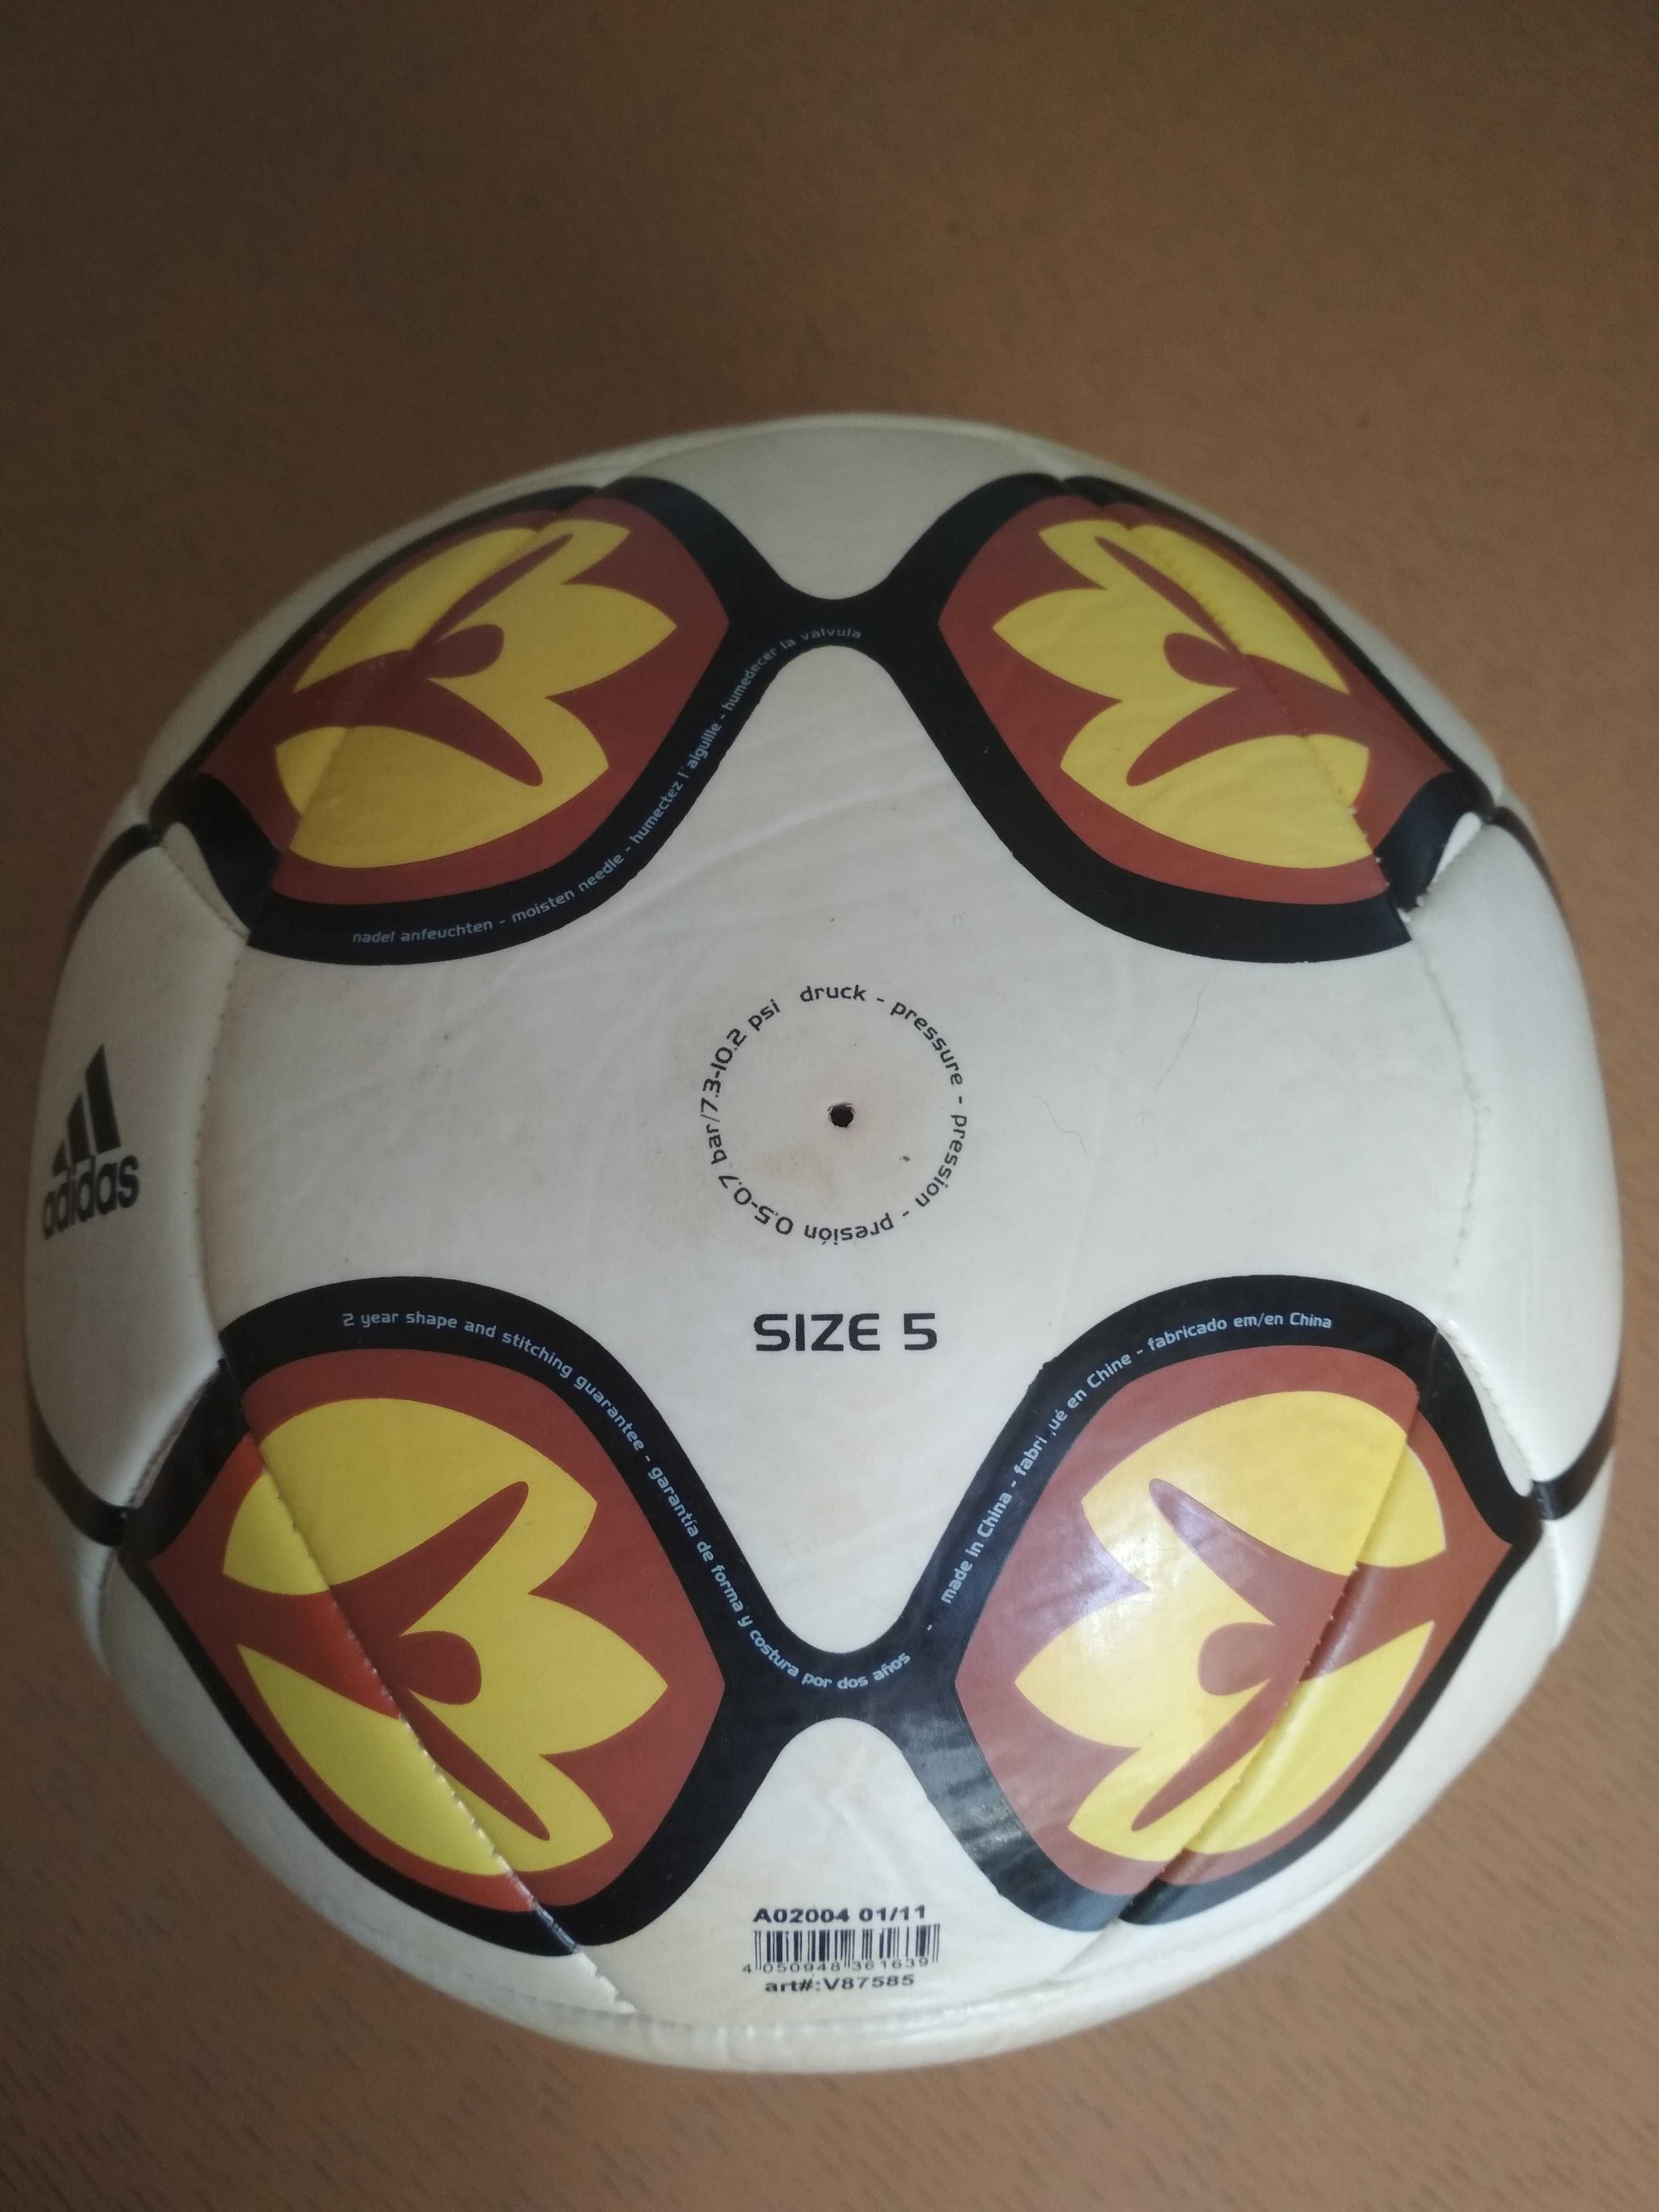 • Мяч Евро 2012, Adidas, McDonald’s, продам.